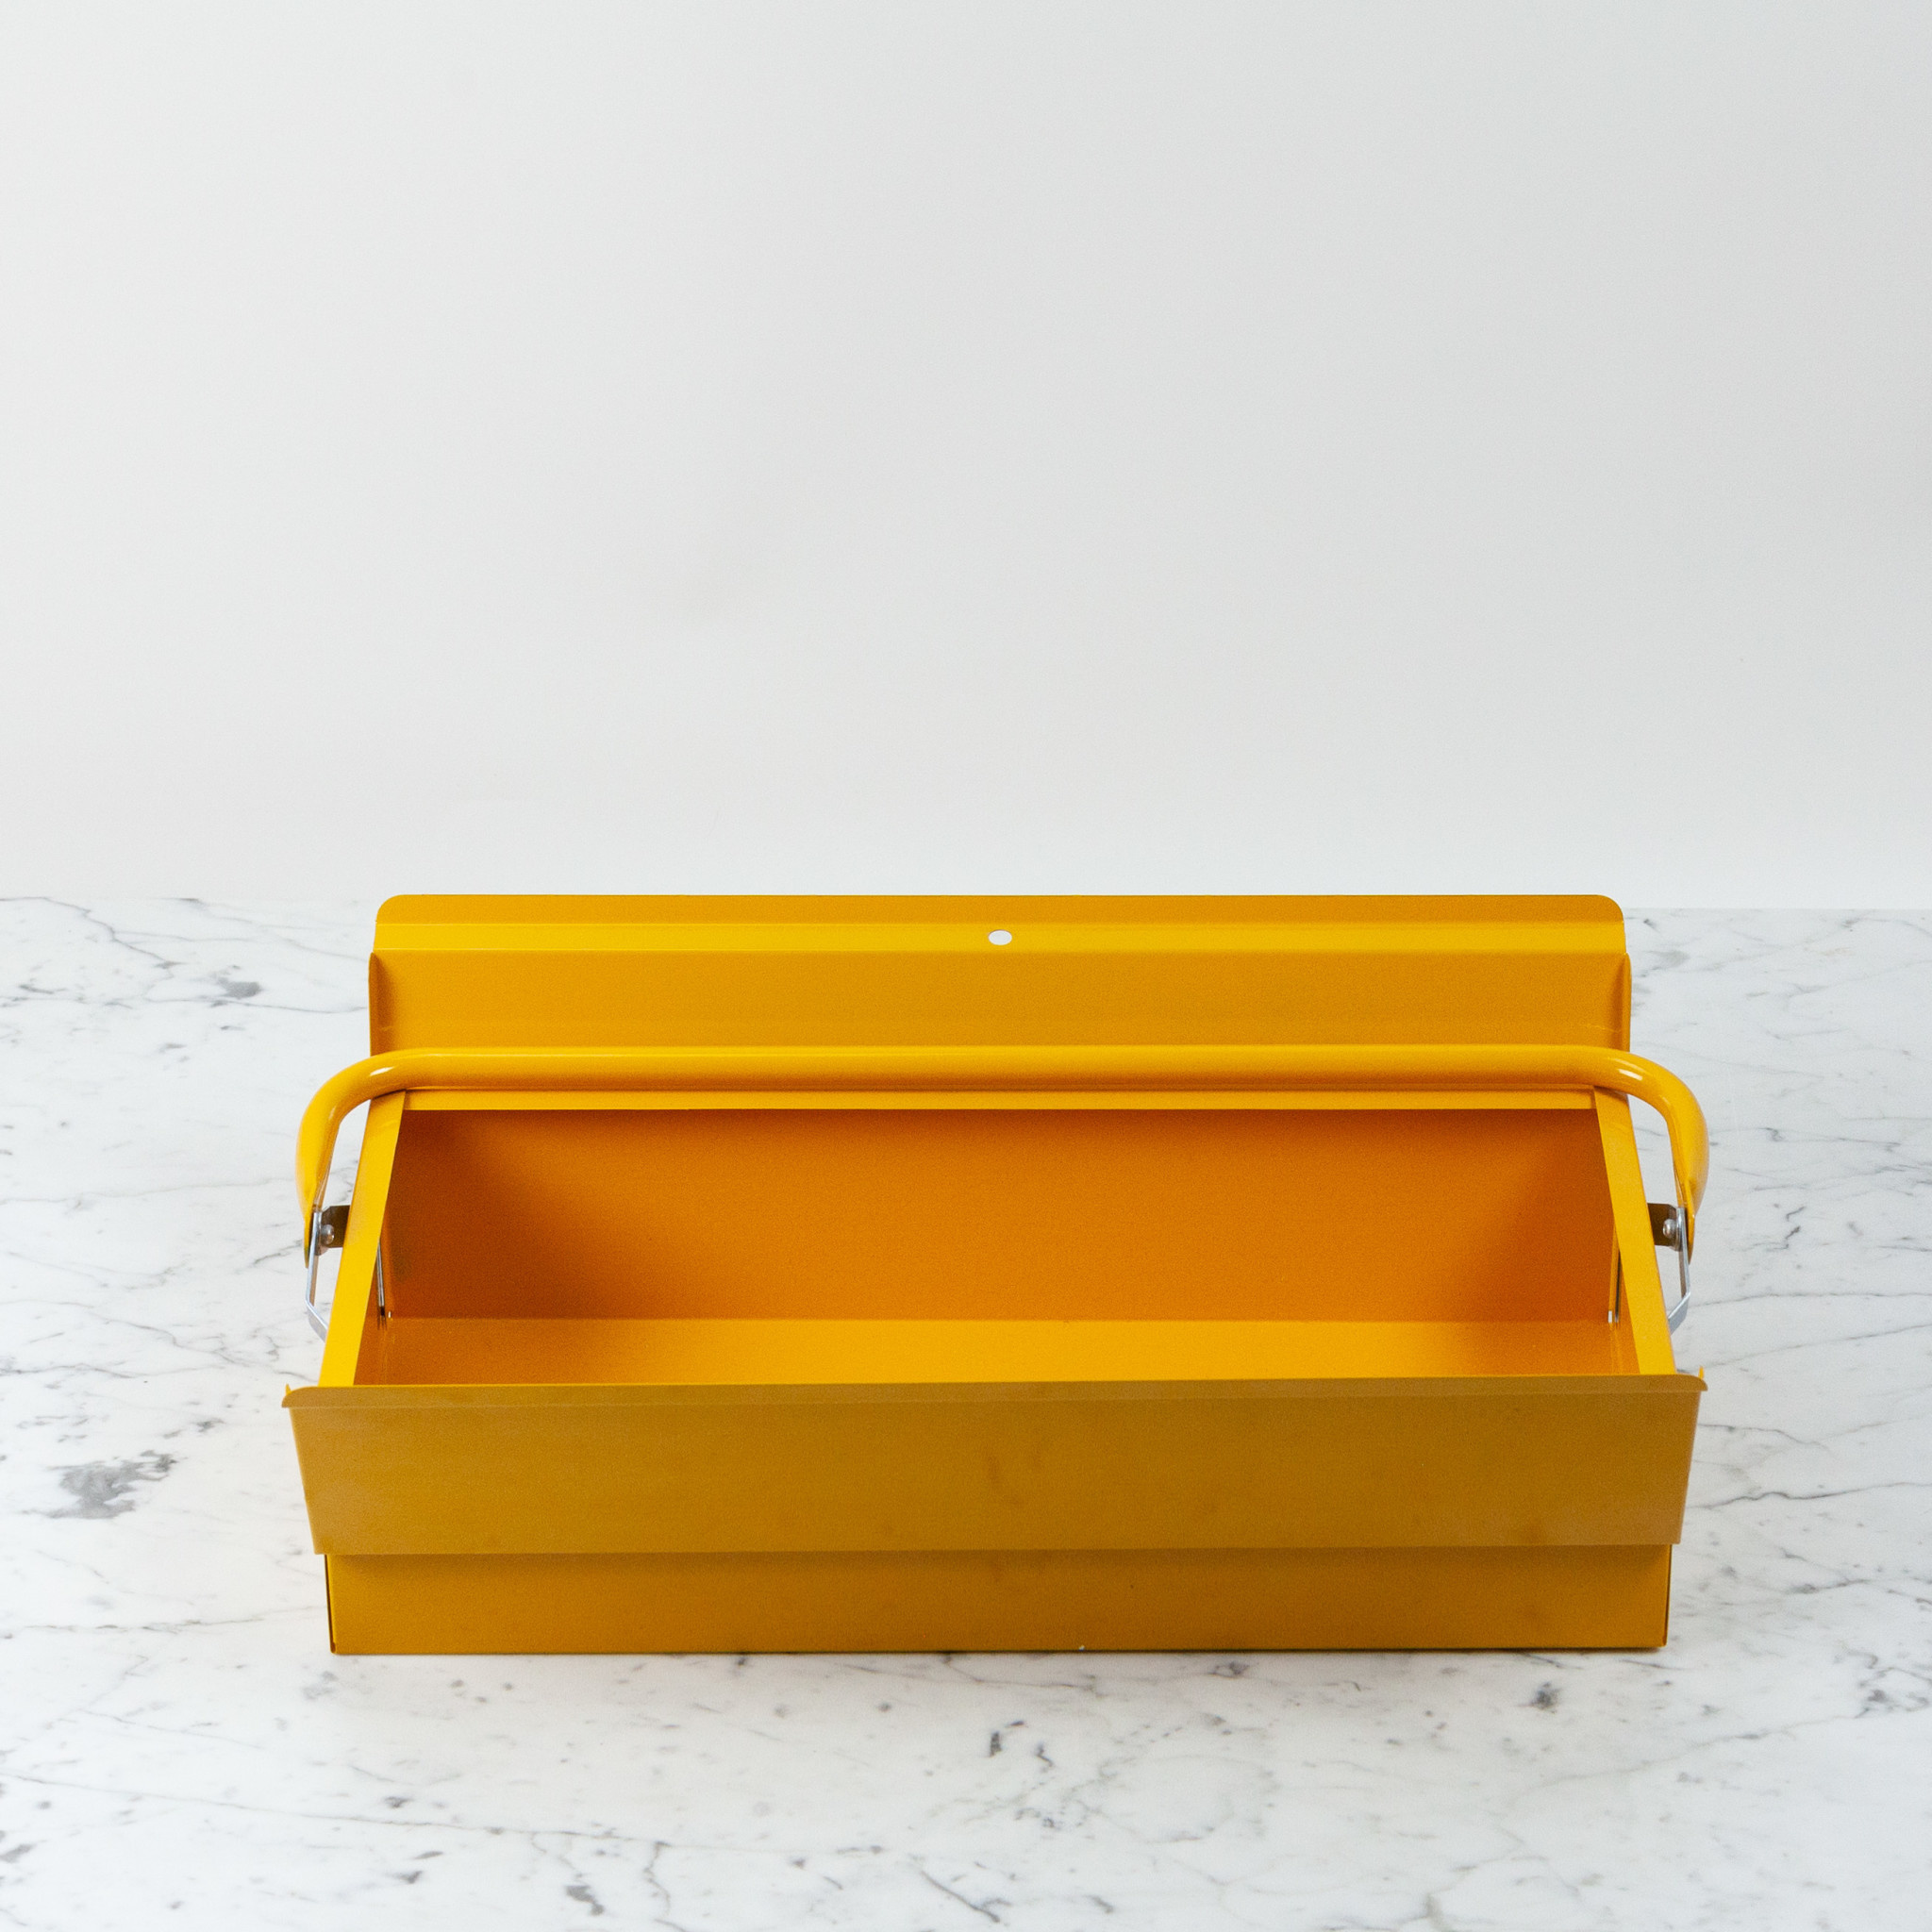 Italian Single Layer Steel Tool Box - Yellow